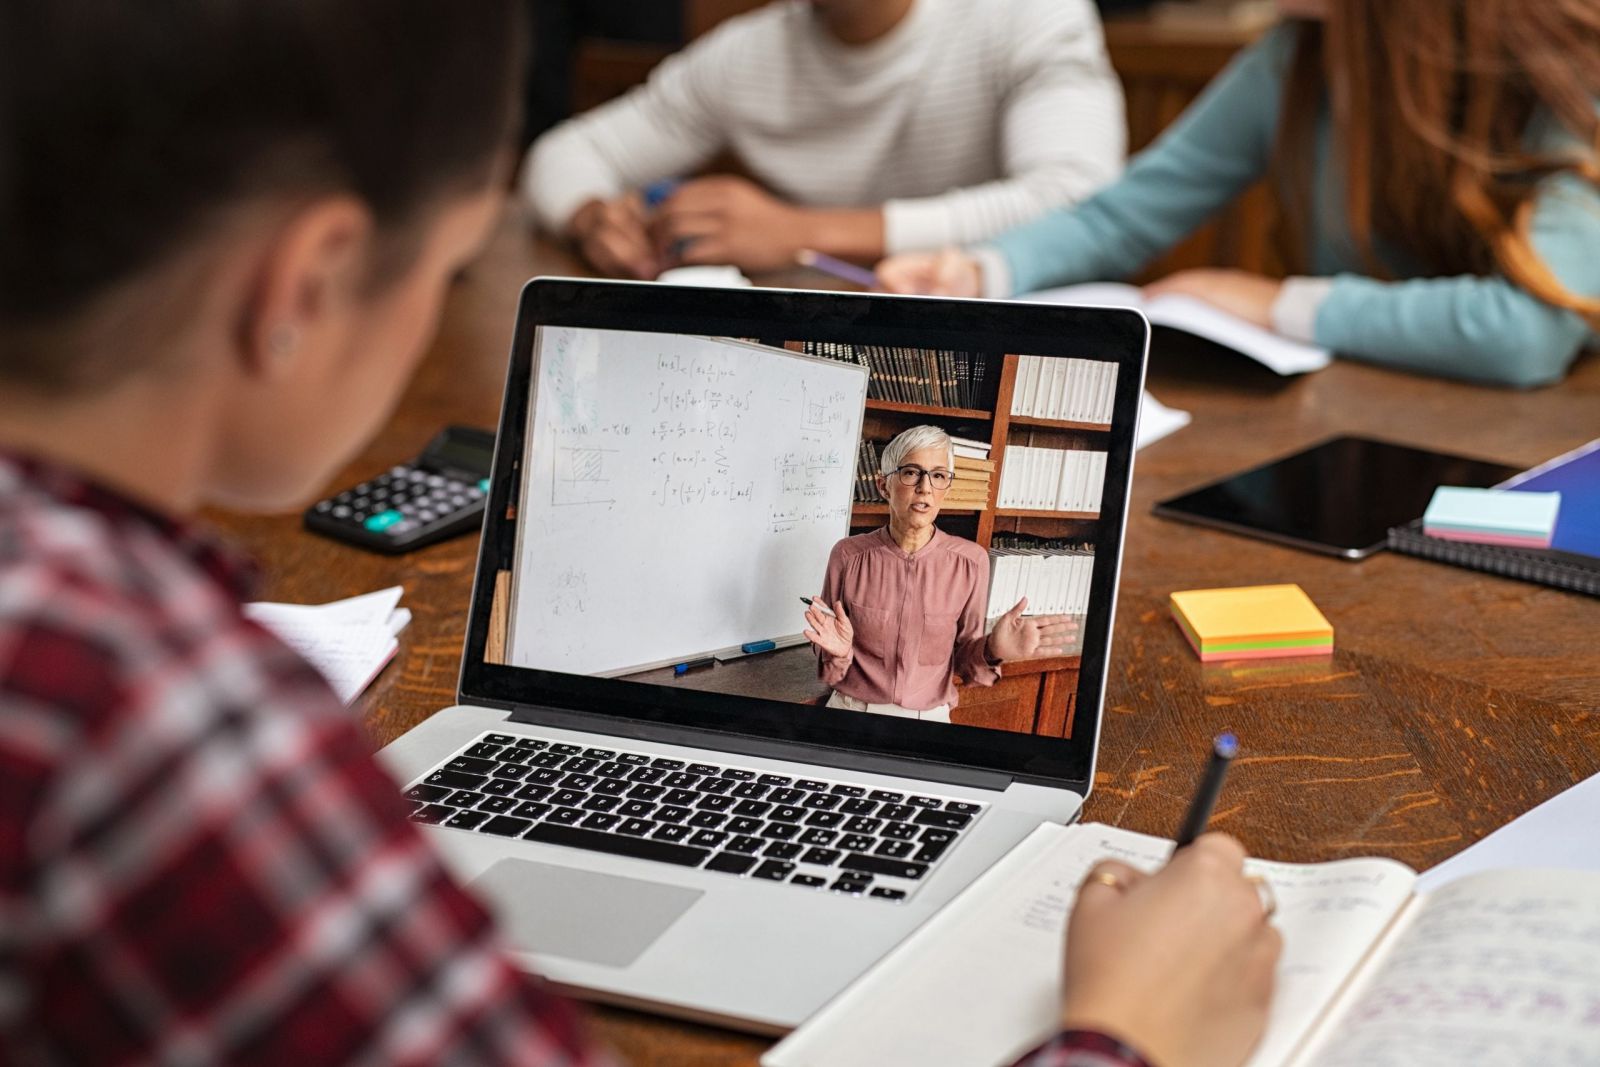 Laptop cho sinh viên quản trị kinh doanh giúp tìm kiếm và học hỏi thêm những kiến thức mới